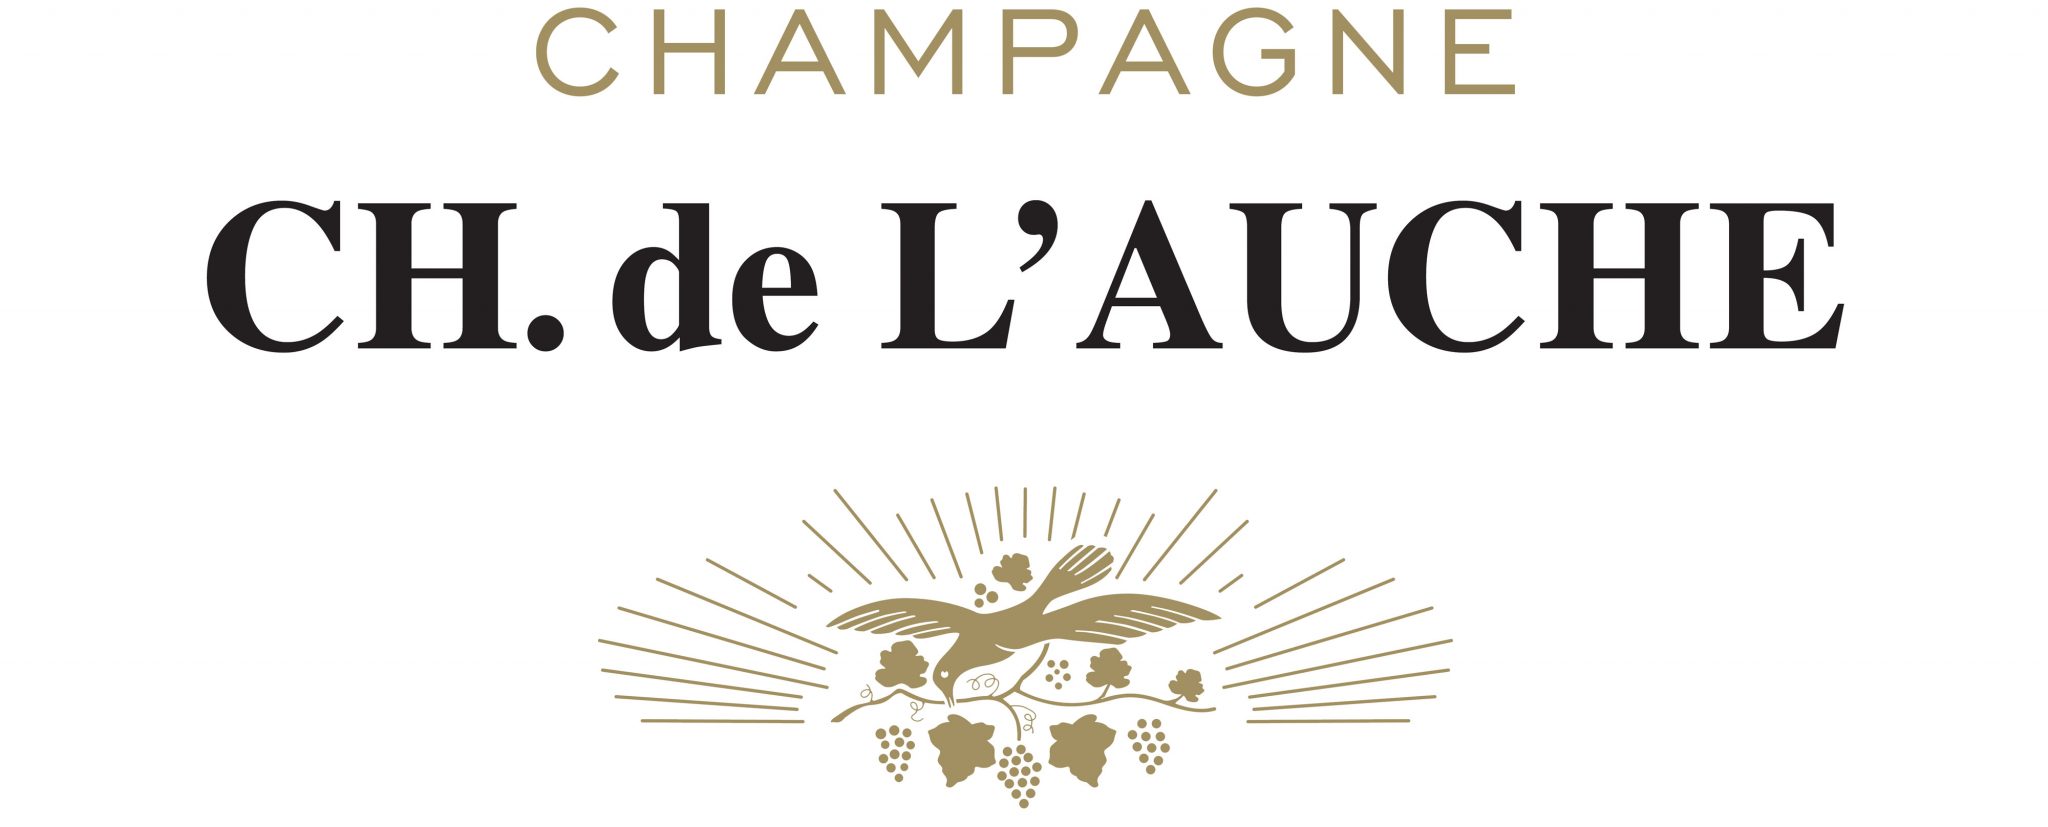 Champagne Ch. de l'Auche